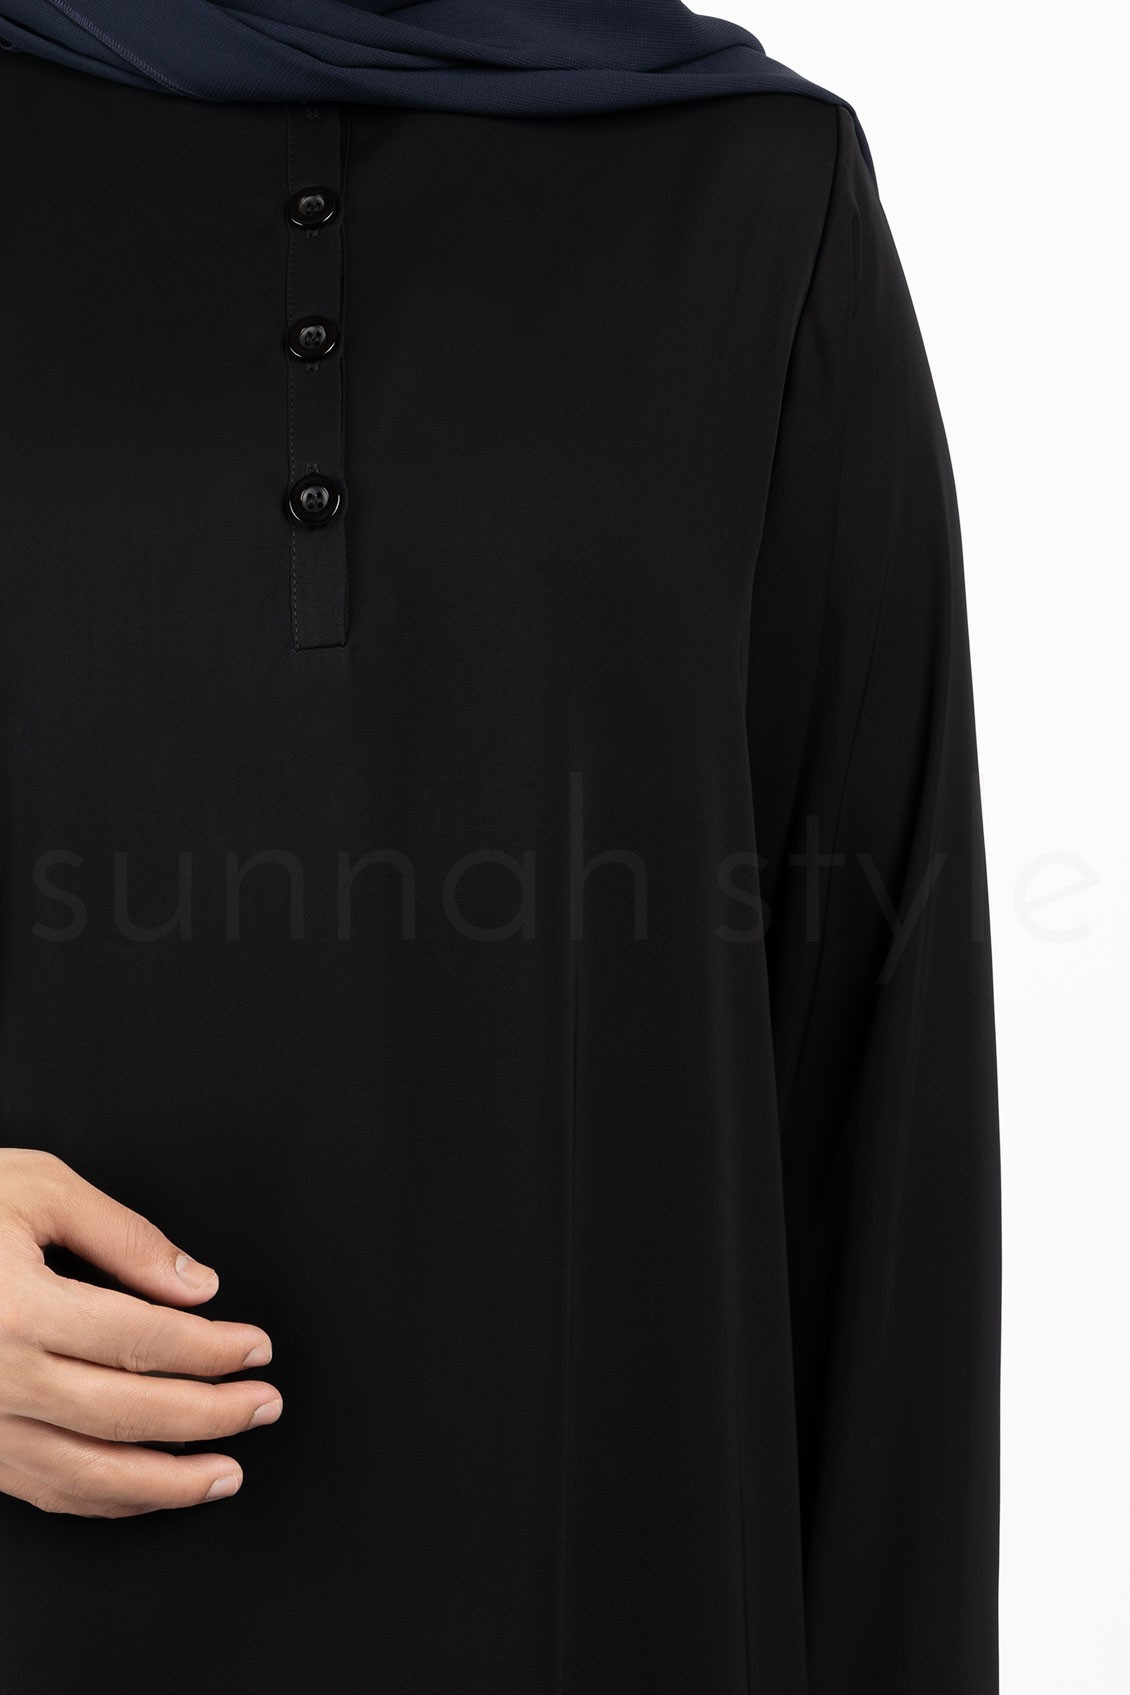 Sunnah Style Avant Abaya Top Black